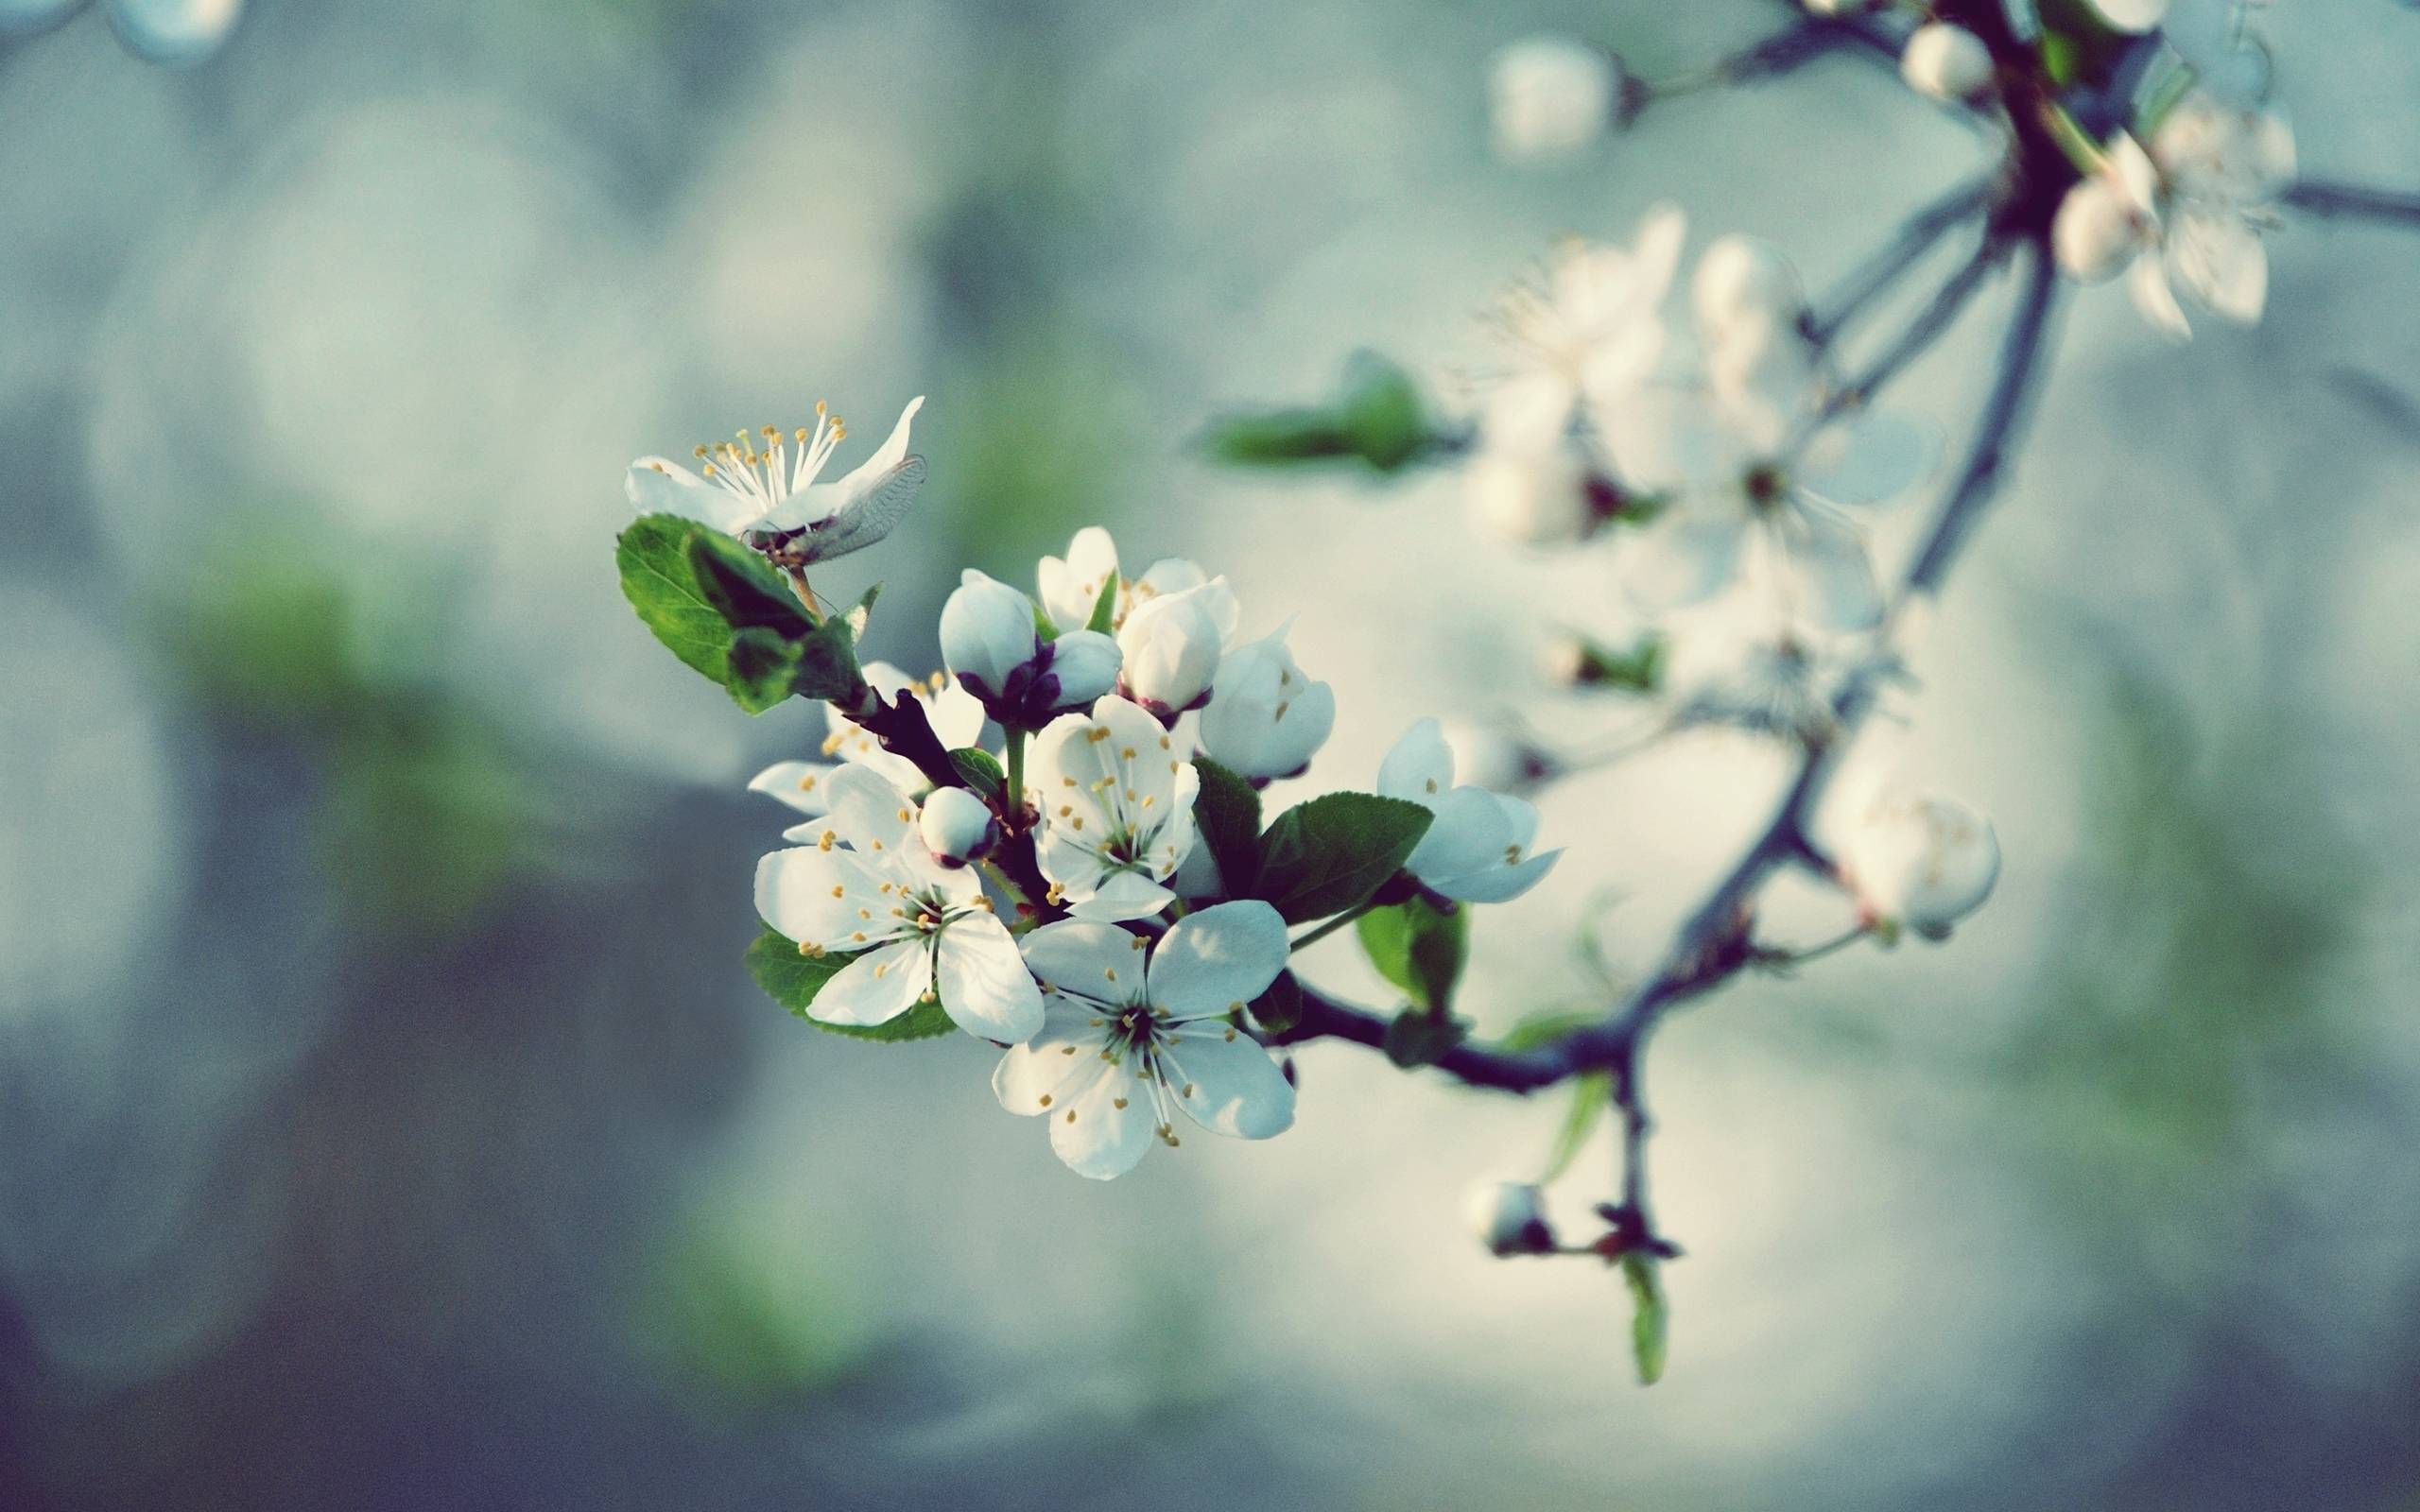 پس زمینه زیبا و بهاری از شکوفه زیبا و خوشمنظر سفید سیب